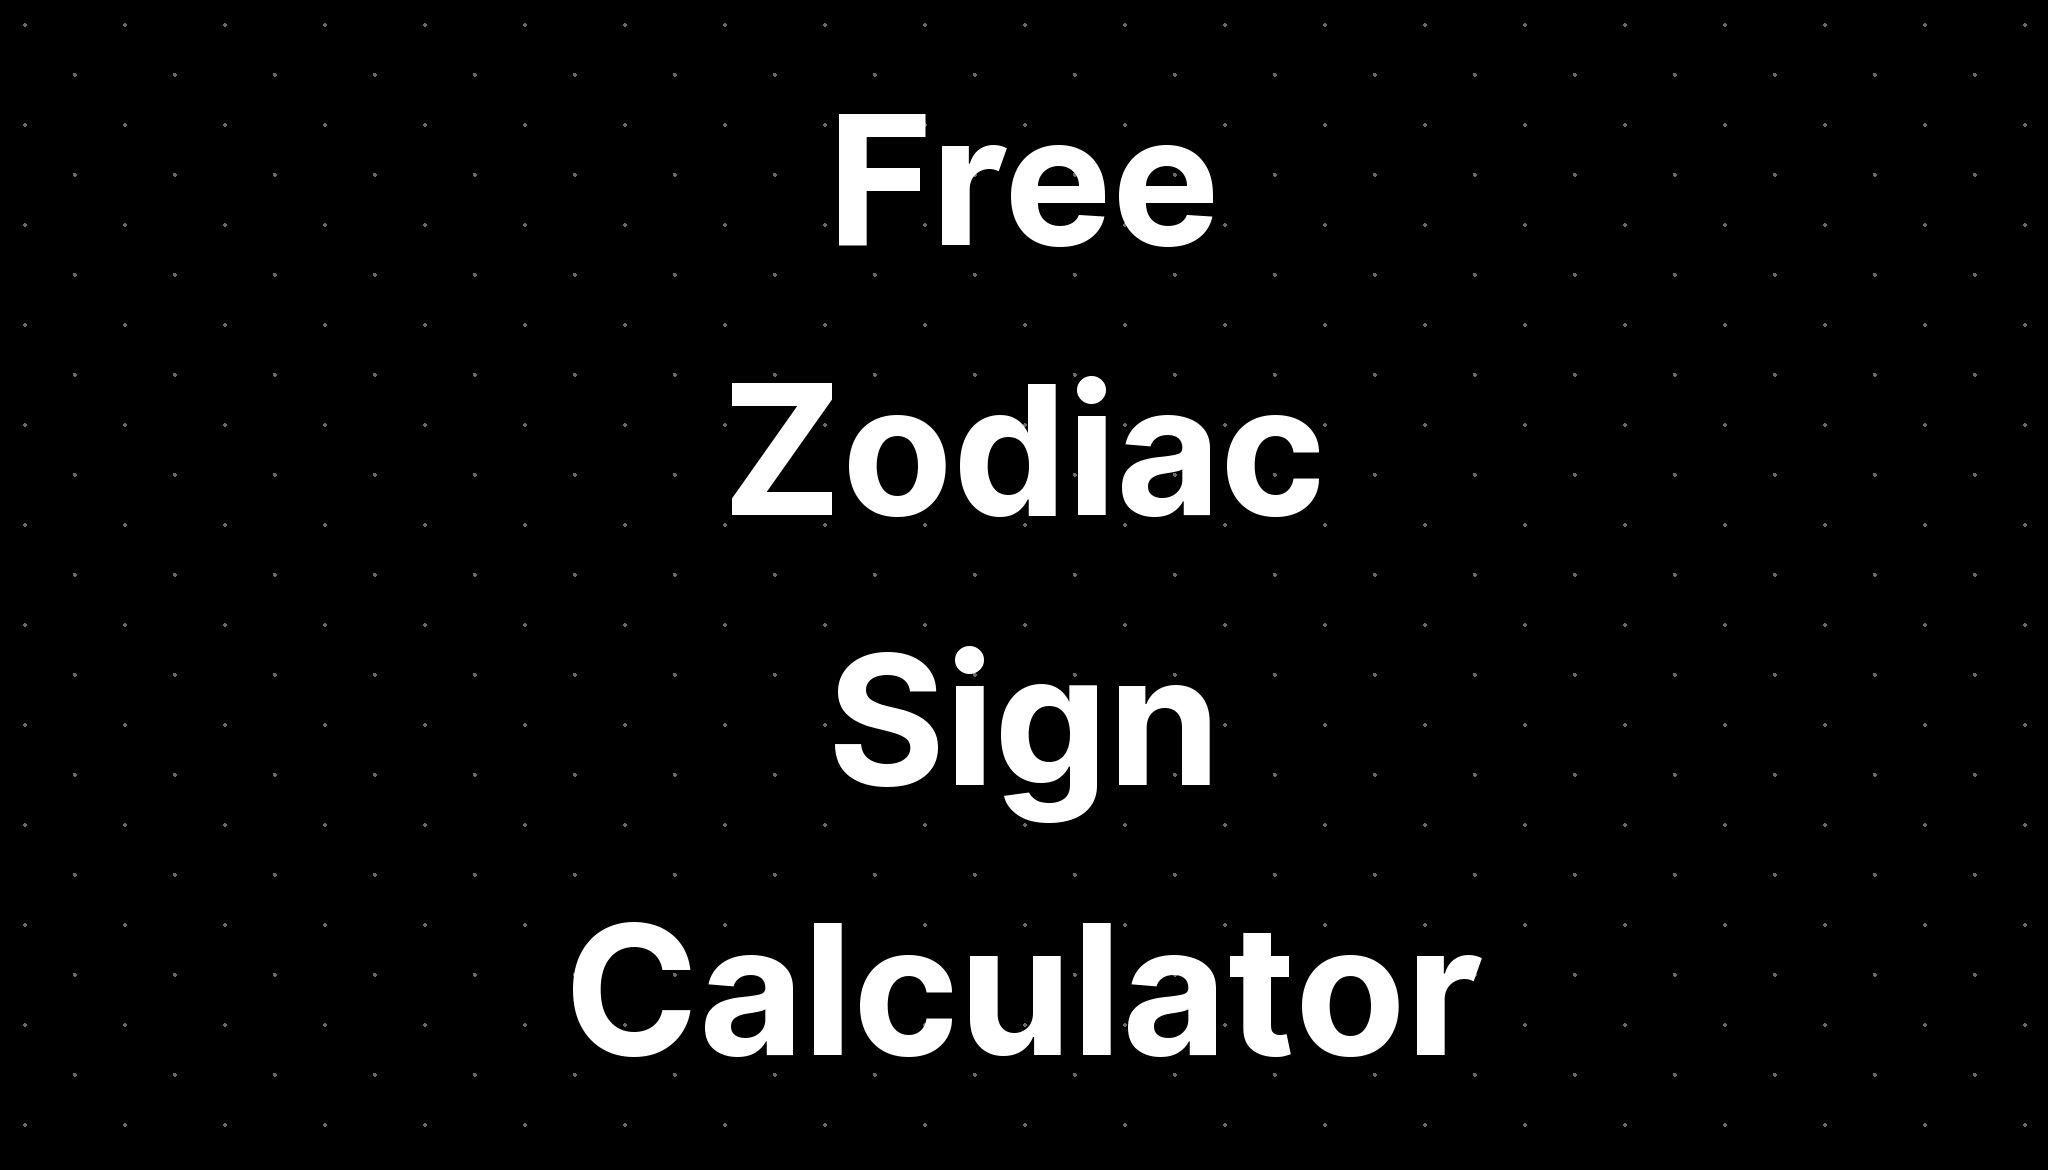 juno zodiac ign calculator